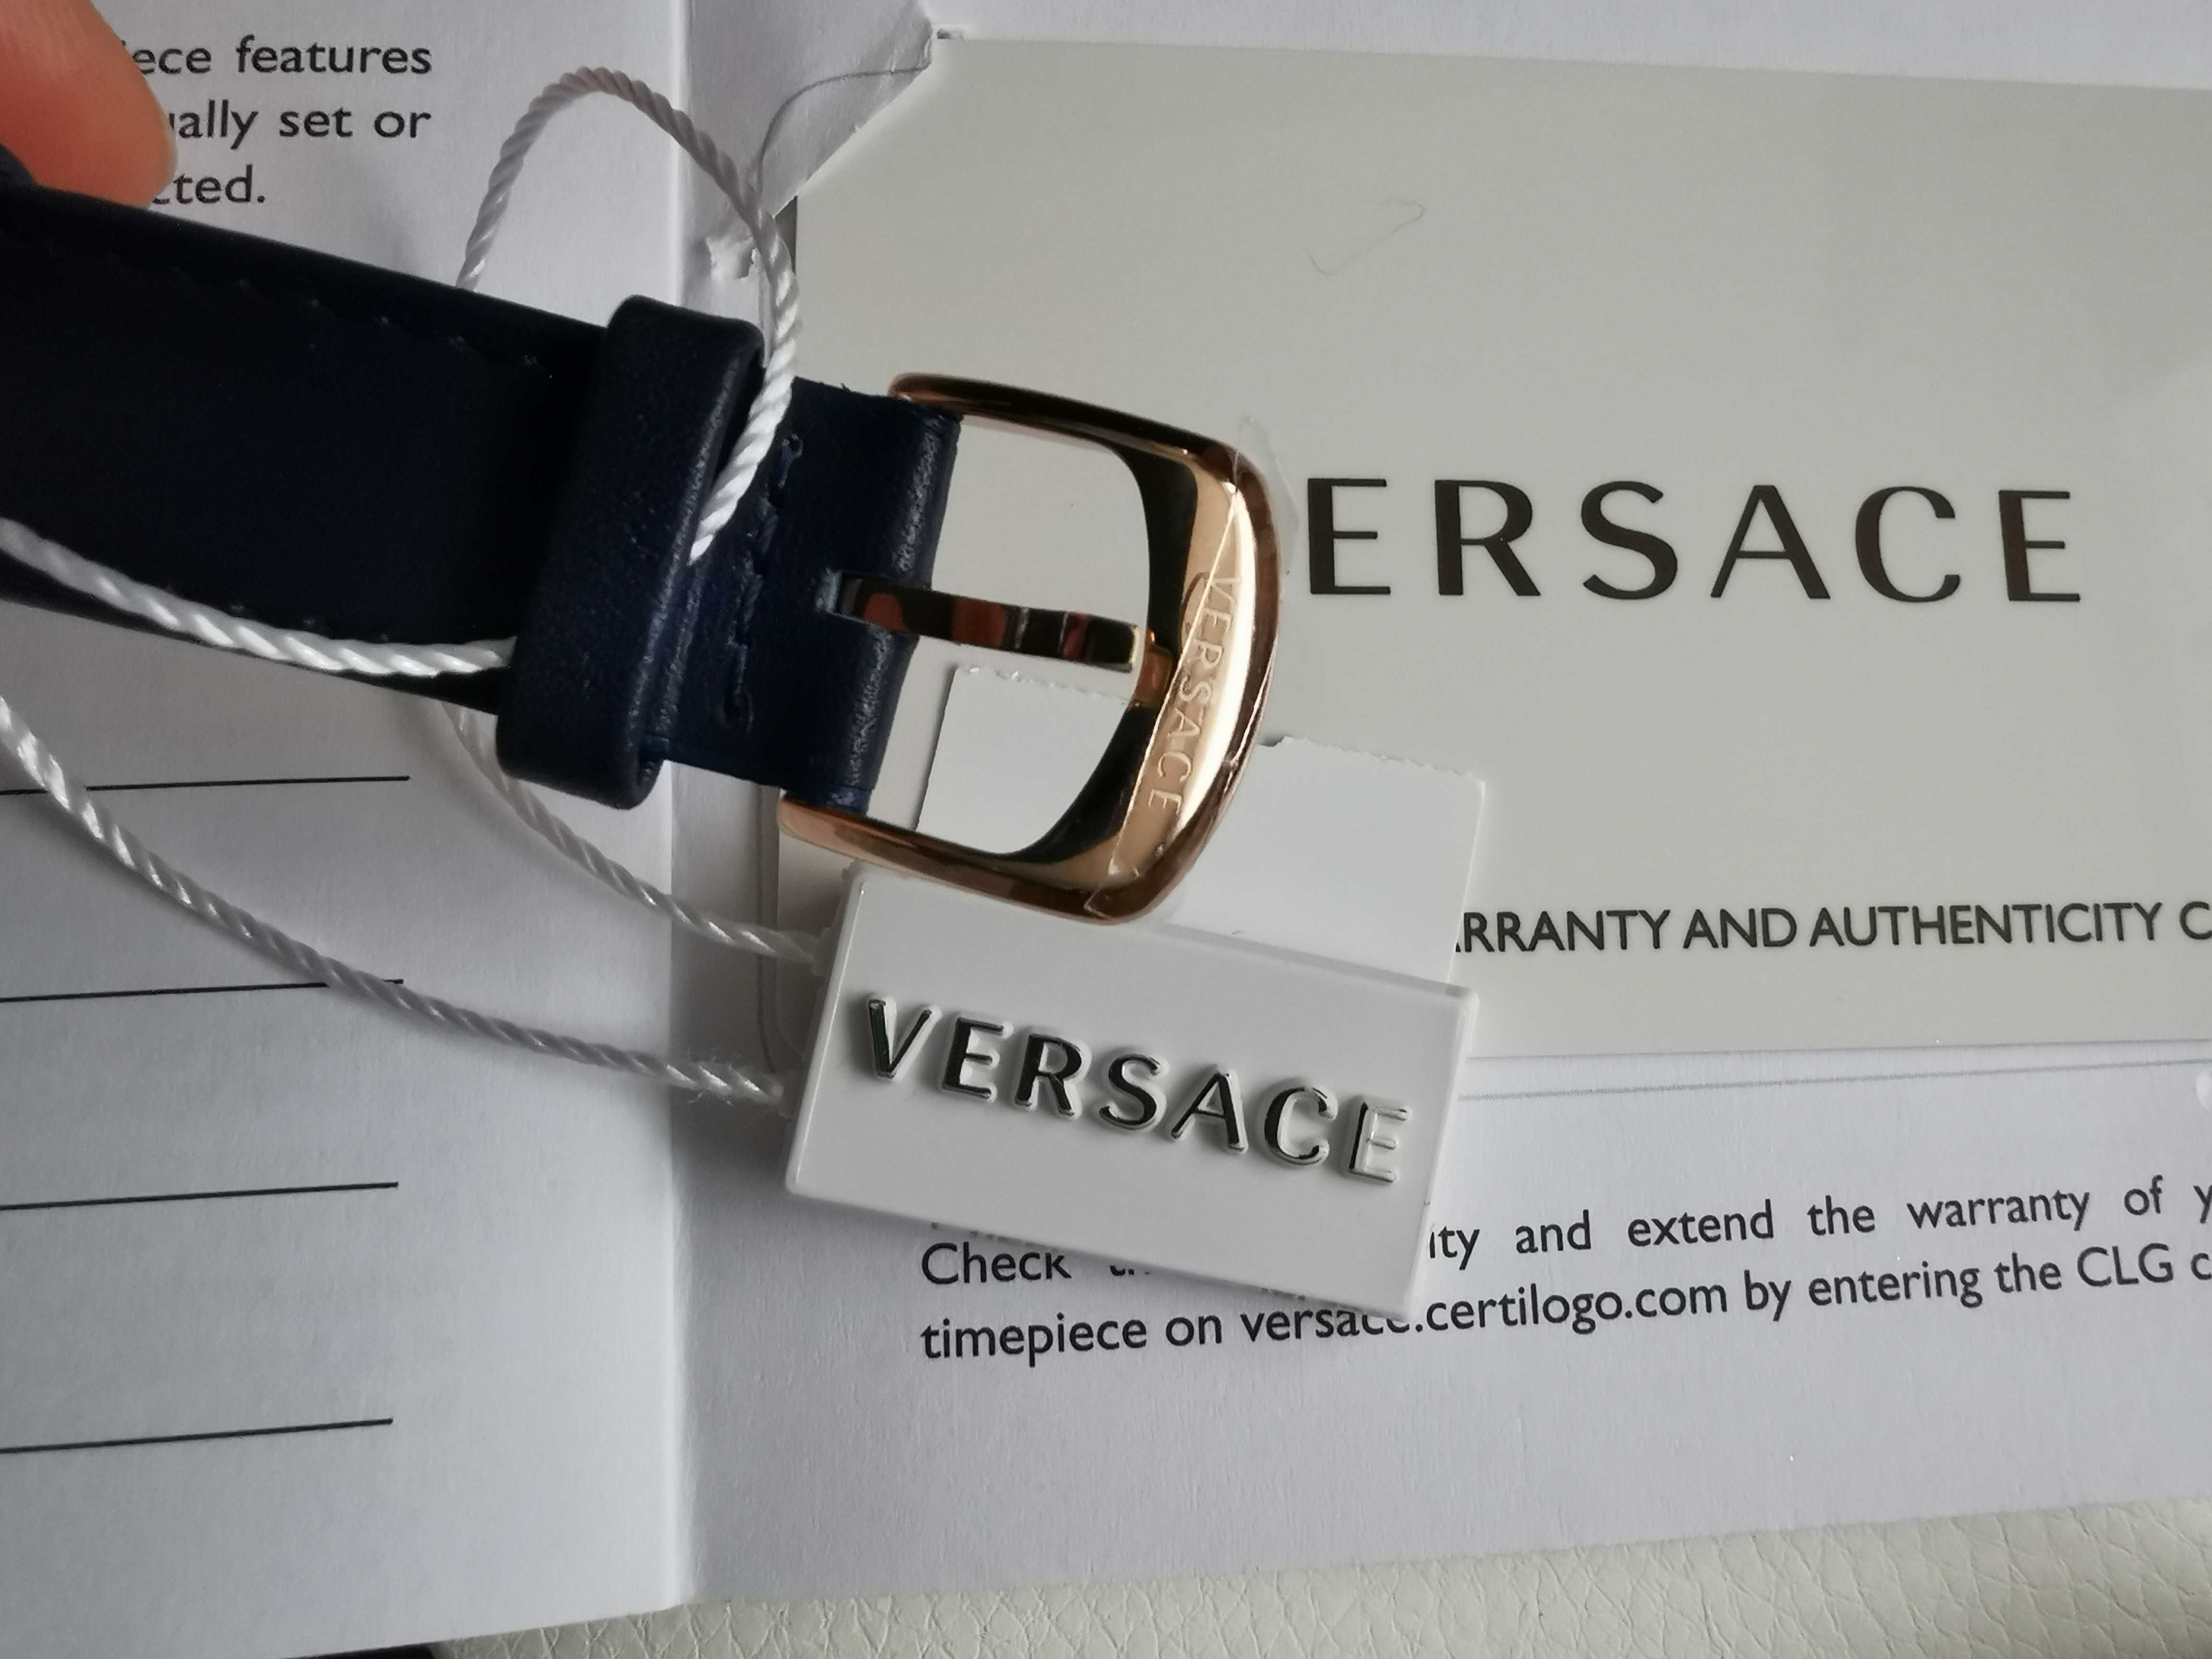 Женские часы Versace, жіночий годинник, модель VBP090017